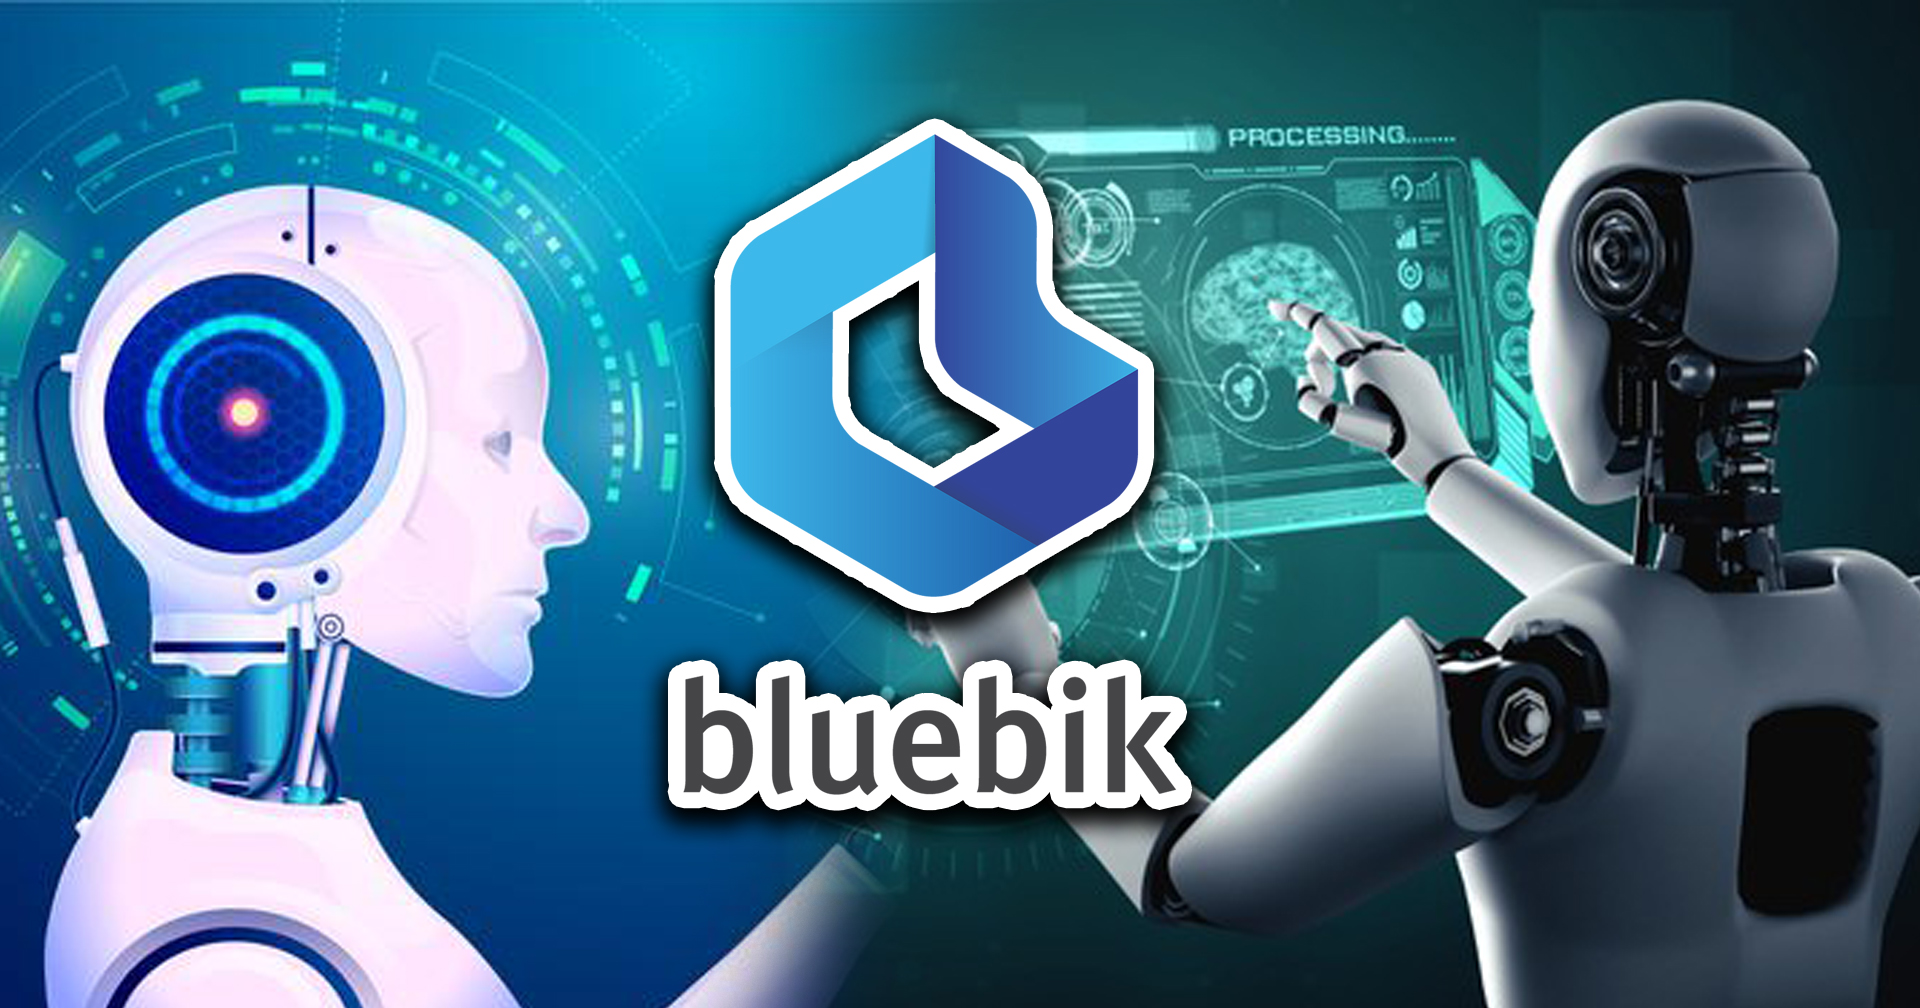 Bluebik แนะเร่งทำ “AI Transformation” ยกระดับคุณภาพองค์กร